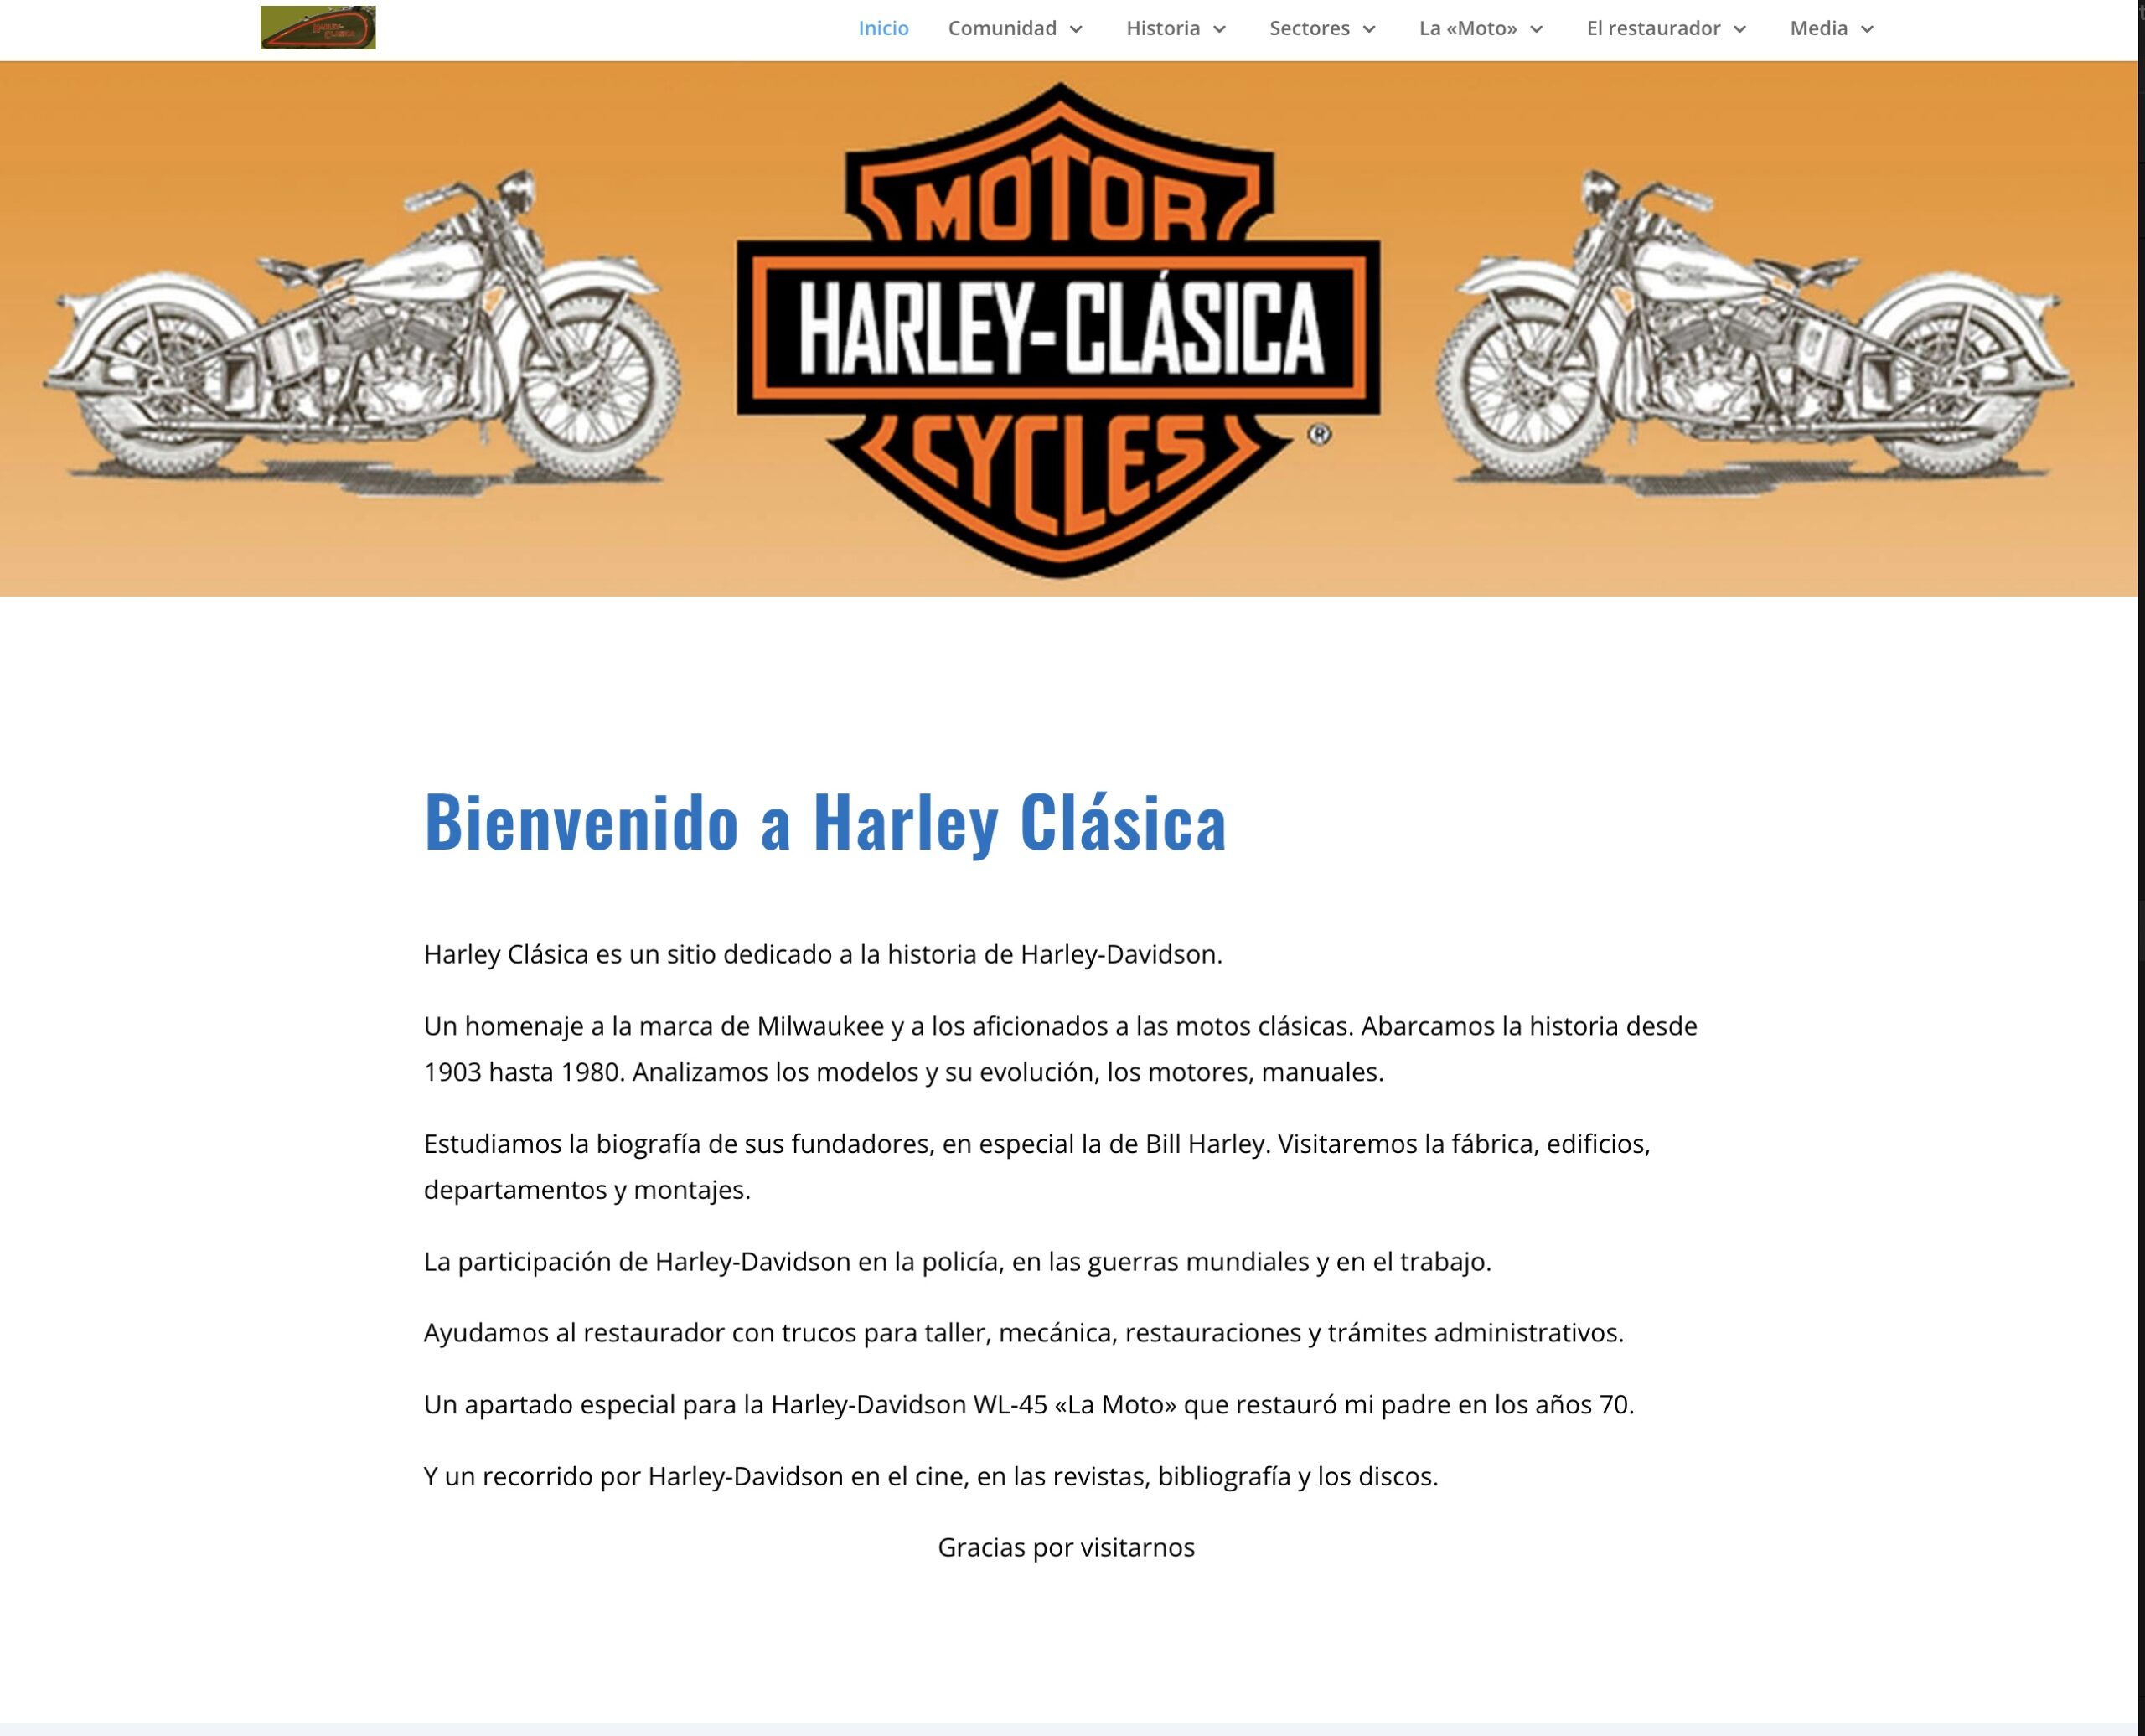 Harley Clásica